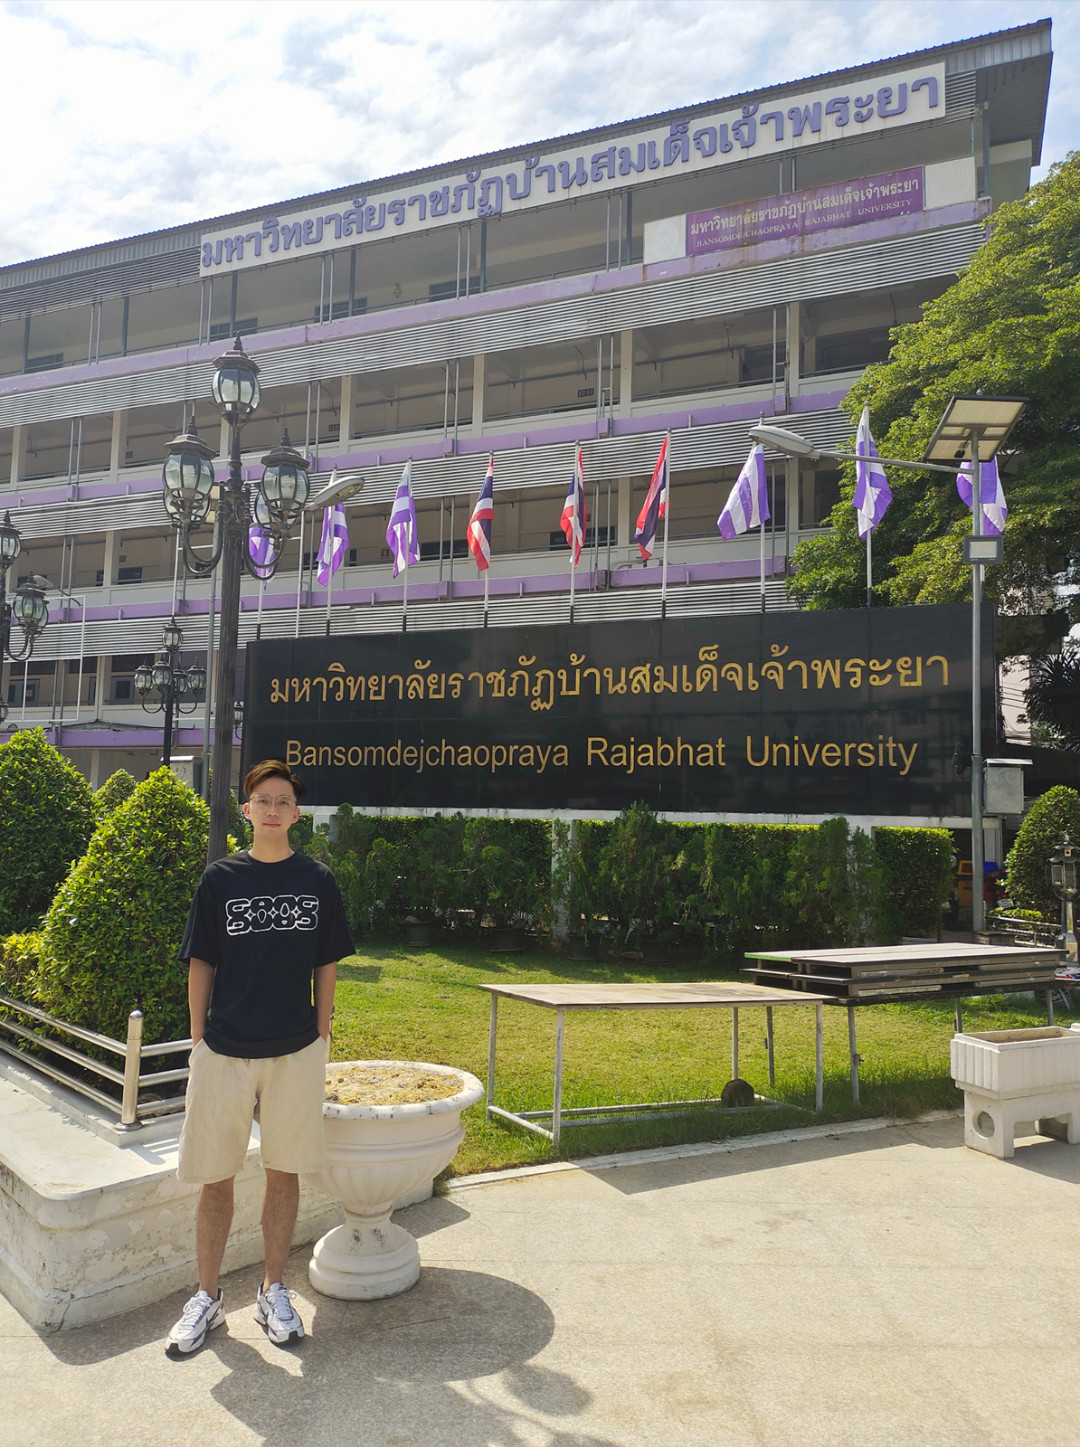 我在泰国留学生活的真实见闻和感受